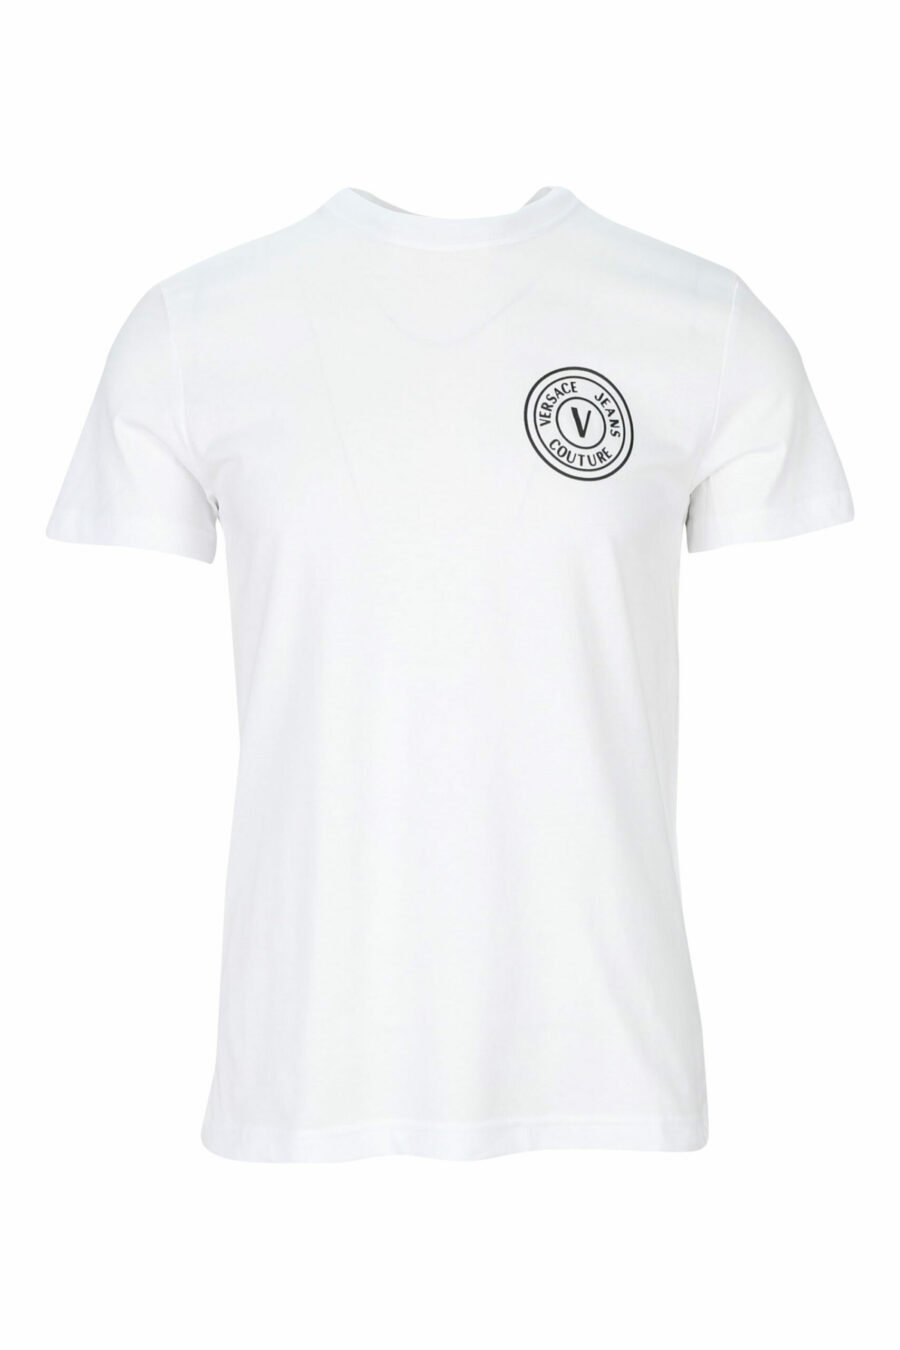 Weißes T-Shirt mit schwarzem kreisförmigen Mini-Logo - 8052019468526 skaliert